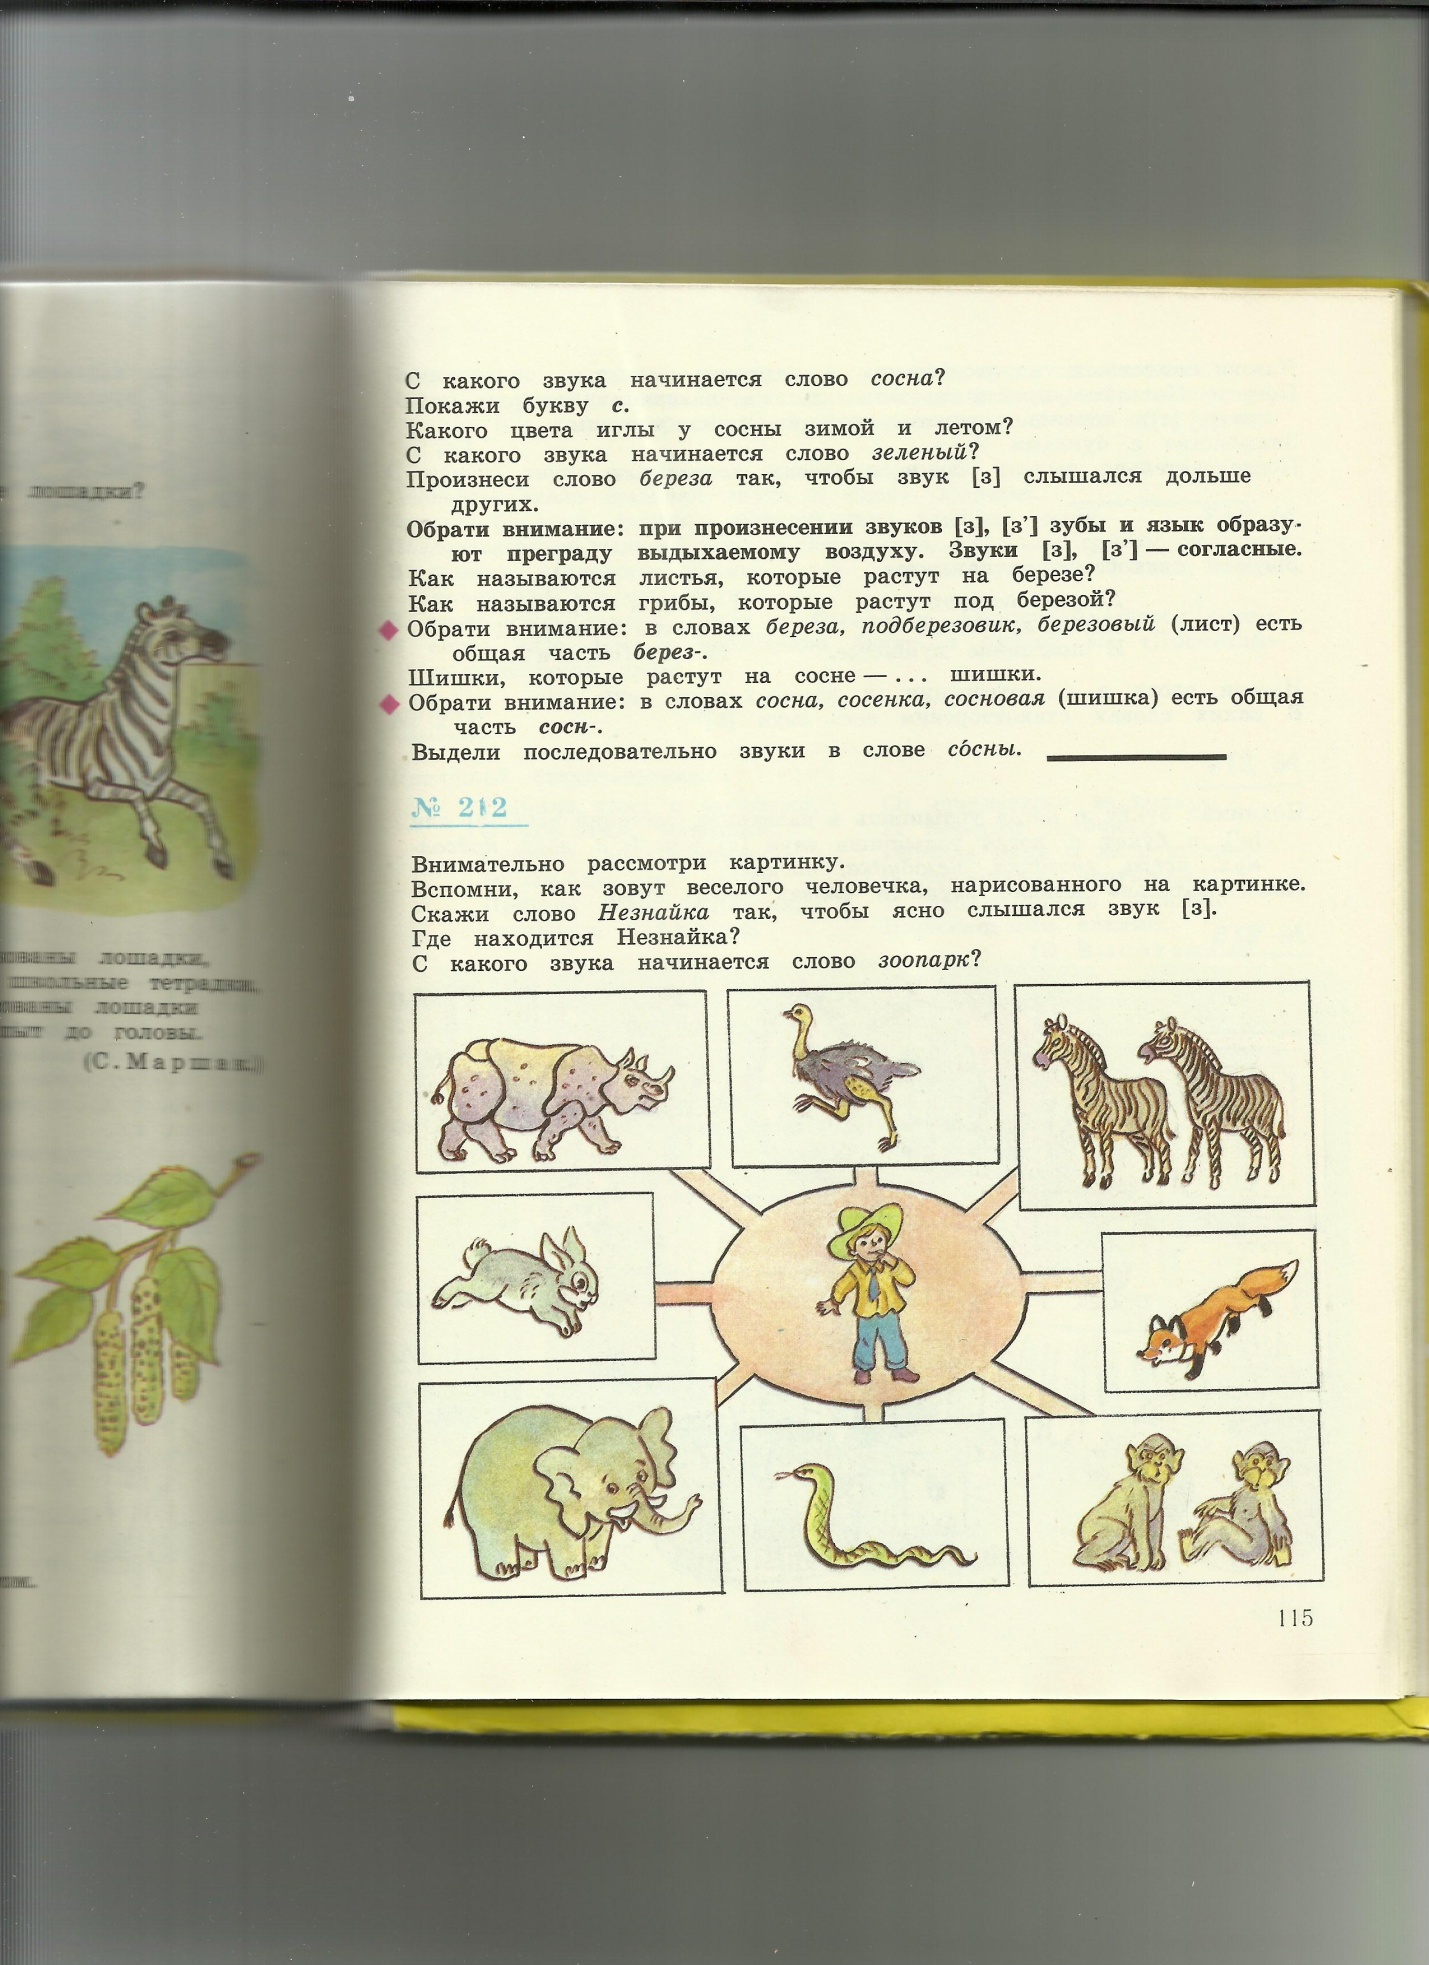 Рабочая тетрадь по курсу Мир животных 8 класс для коррекционной школы 8 вида спецкласс